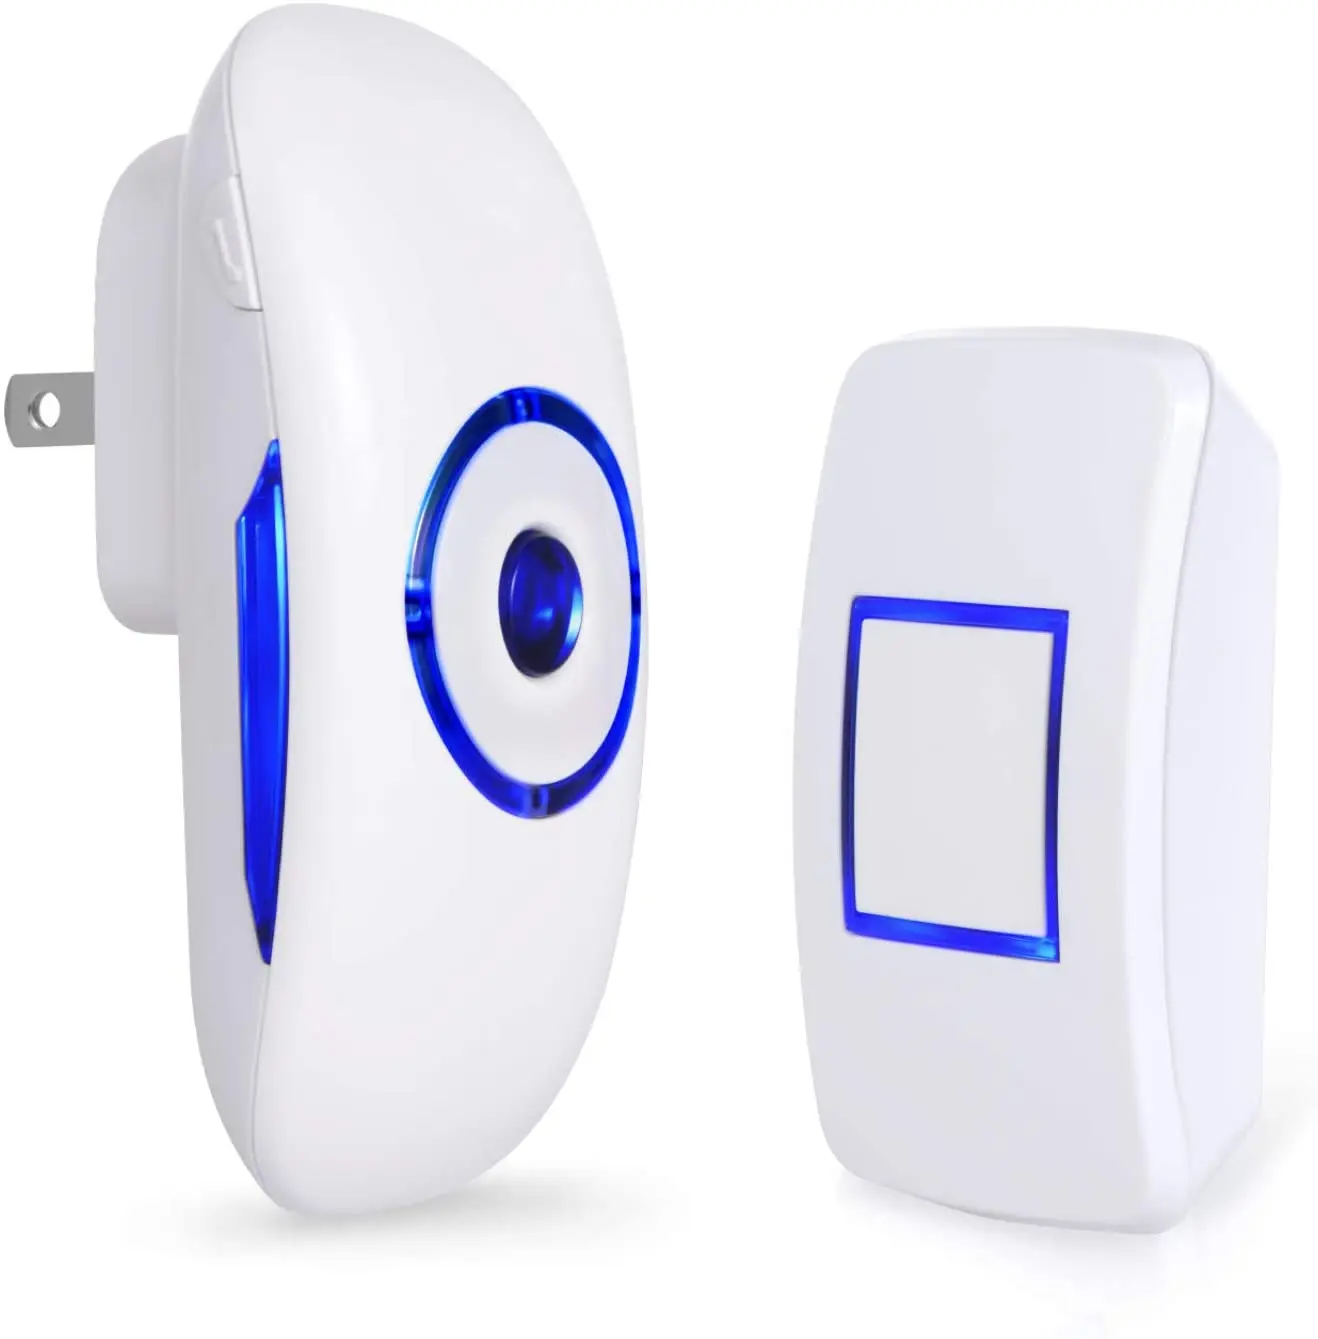 New Chime Door Bell Plug-in LED Smart Doorbell Wireless Electronic Doorbell 